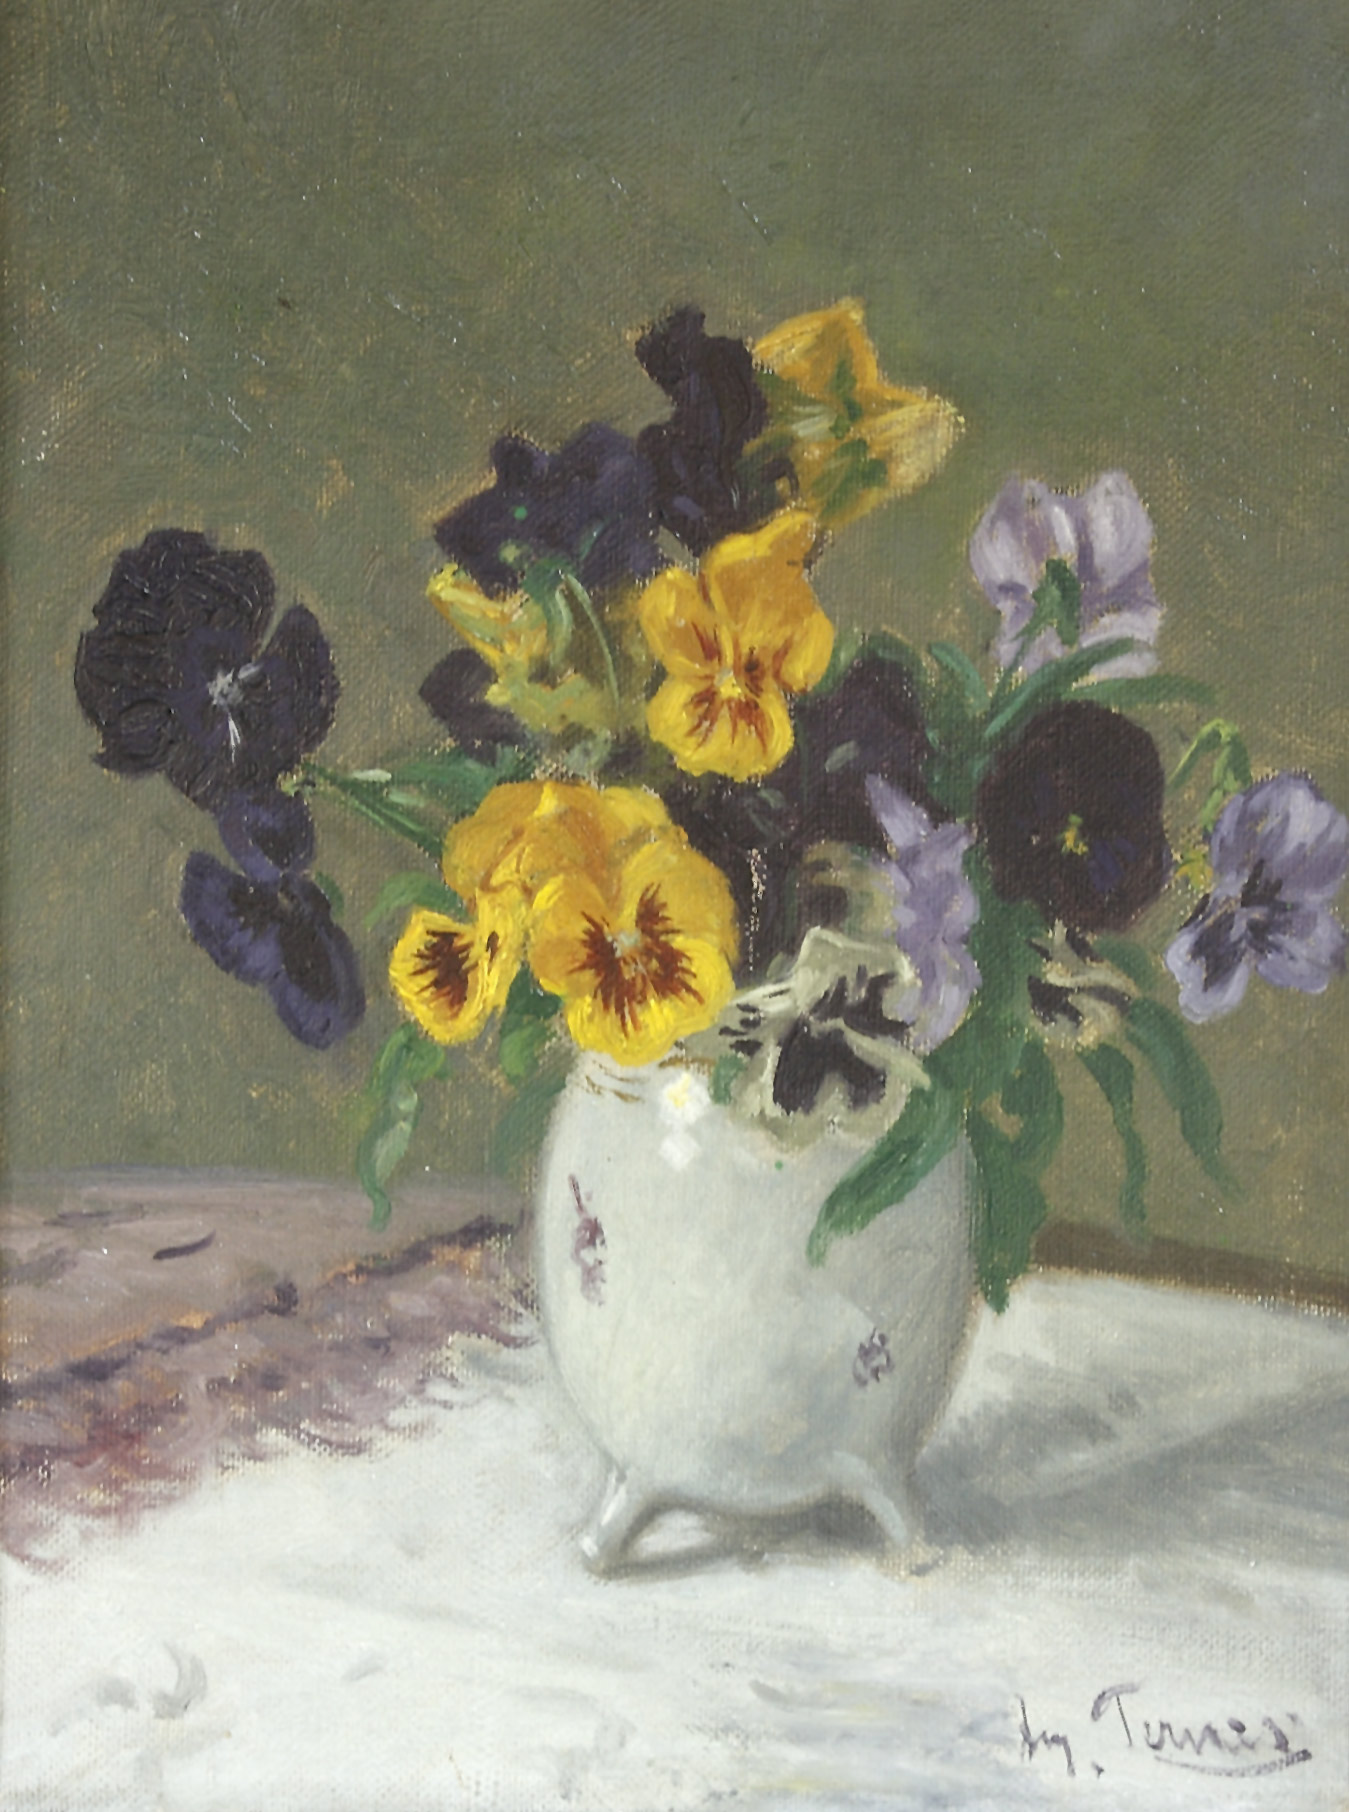 Auktionshaus Quentin Berlin  Gemälde Ternes  August (1872 DÃ¼sseldorf - 1938 ebd.) / StiefmÃ¼tterchen in einer Vase. Ãl auf Leinwand. 34 3 x 25 cm. Rechts unten signiert. Gerahmt.